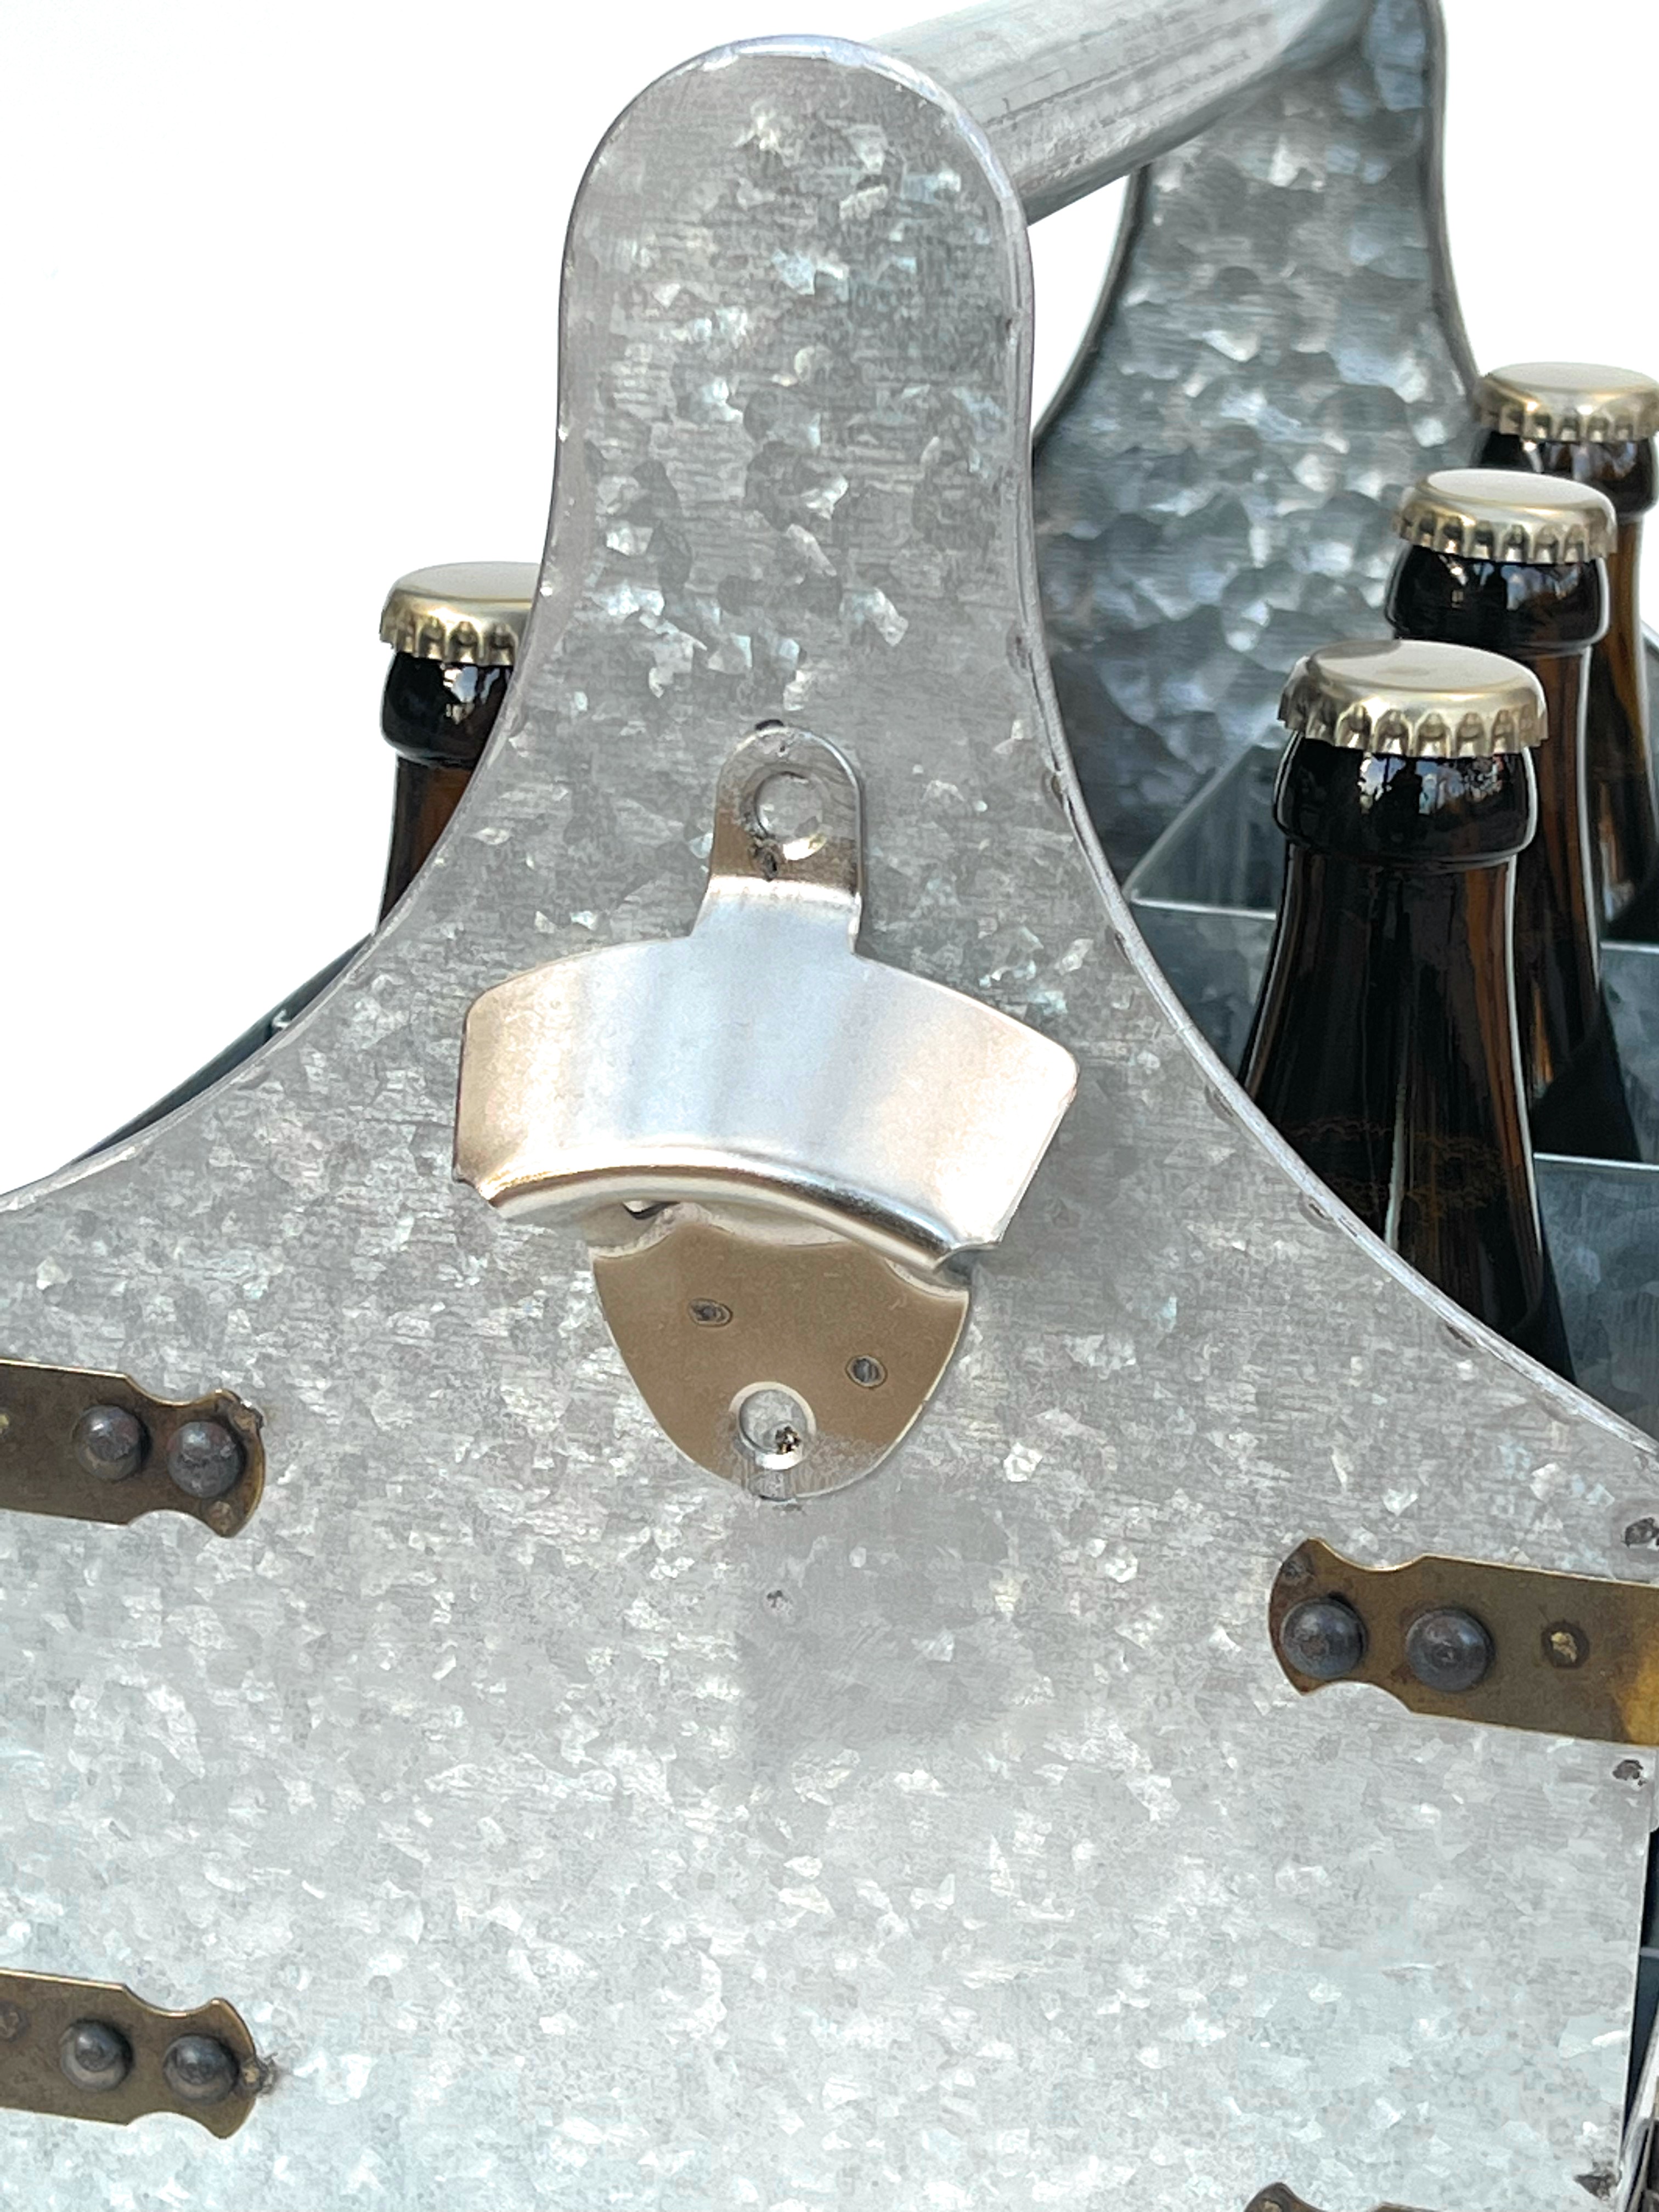 DanDiBo Bierträger Metall mit Öffner 96403 Flaschenträger 6 Flaschen Flaschenöffner  Flaschenkorb Männerhandtasche Männergeschenke - DanDiBo-Ambiente